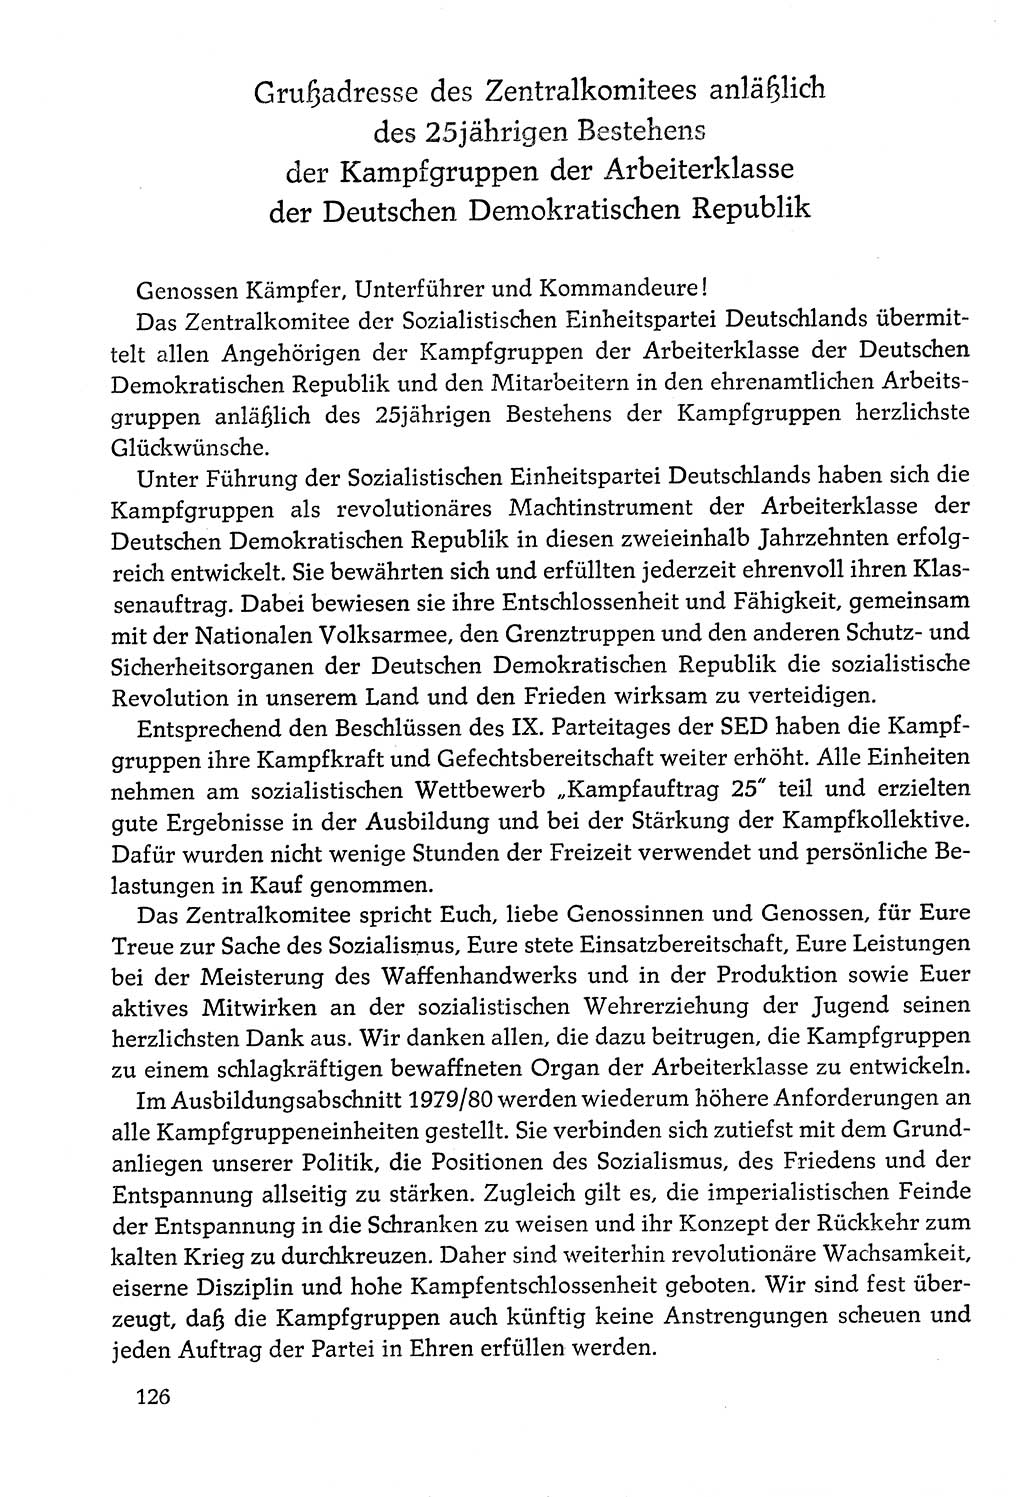 Dokumente der Sozialistischen Einheitspartei Deutschlands (SED) [Deutsche Demokratische Republik (DDR)] 1978-1979, Seite 126 (Dok. SED DDR 1978-1979, S. 126)